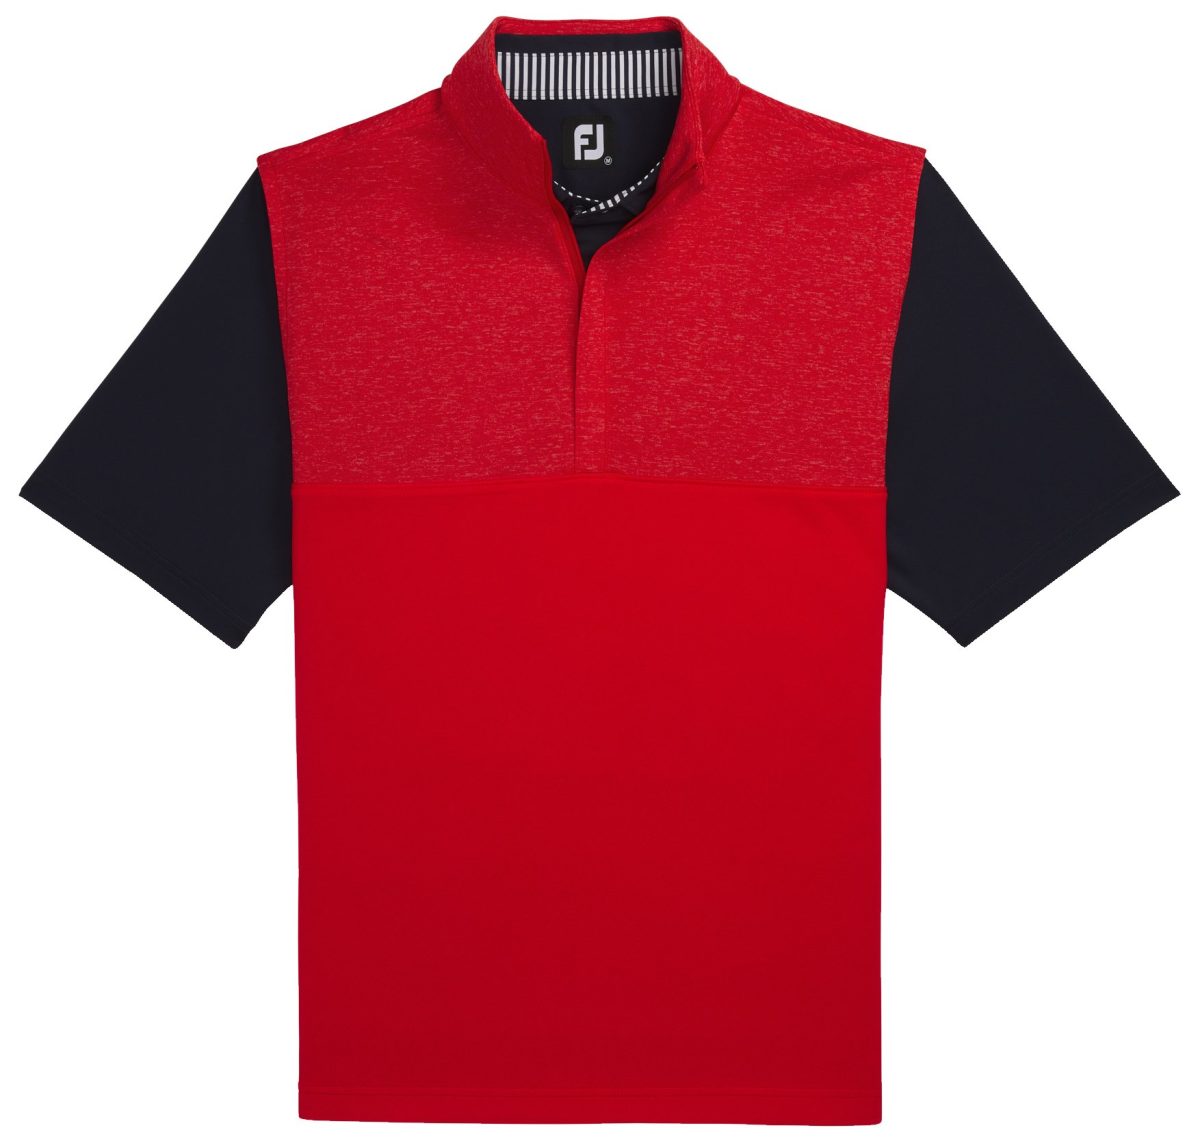 FootJoy Men's Heather Yoke Half-Zip Golf Vest in Red, Size S